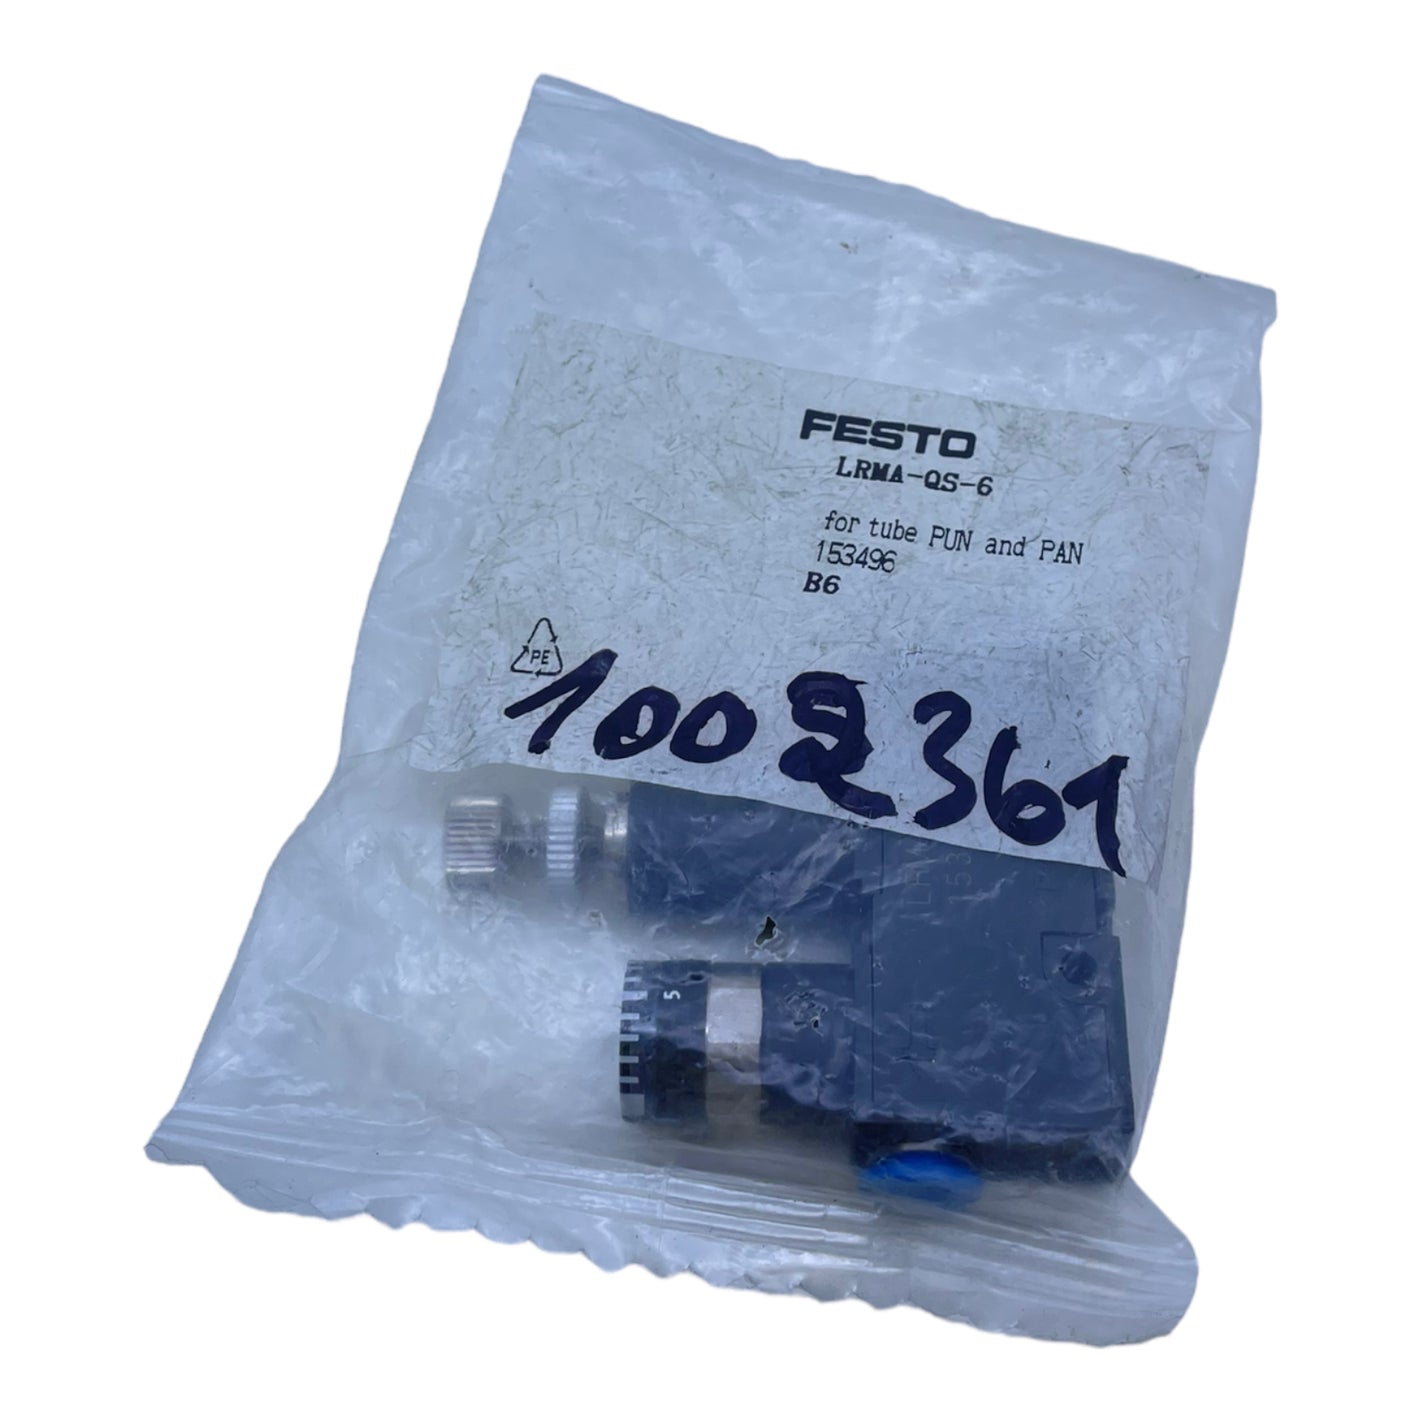 Festo LRMA-QS-6 Druckregelventil 153496 mit Durchgangsbohrung max 124 l/min